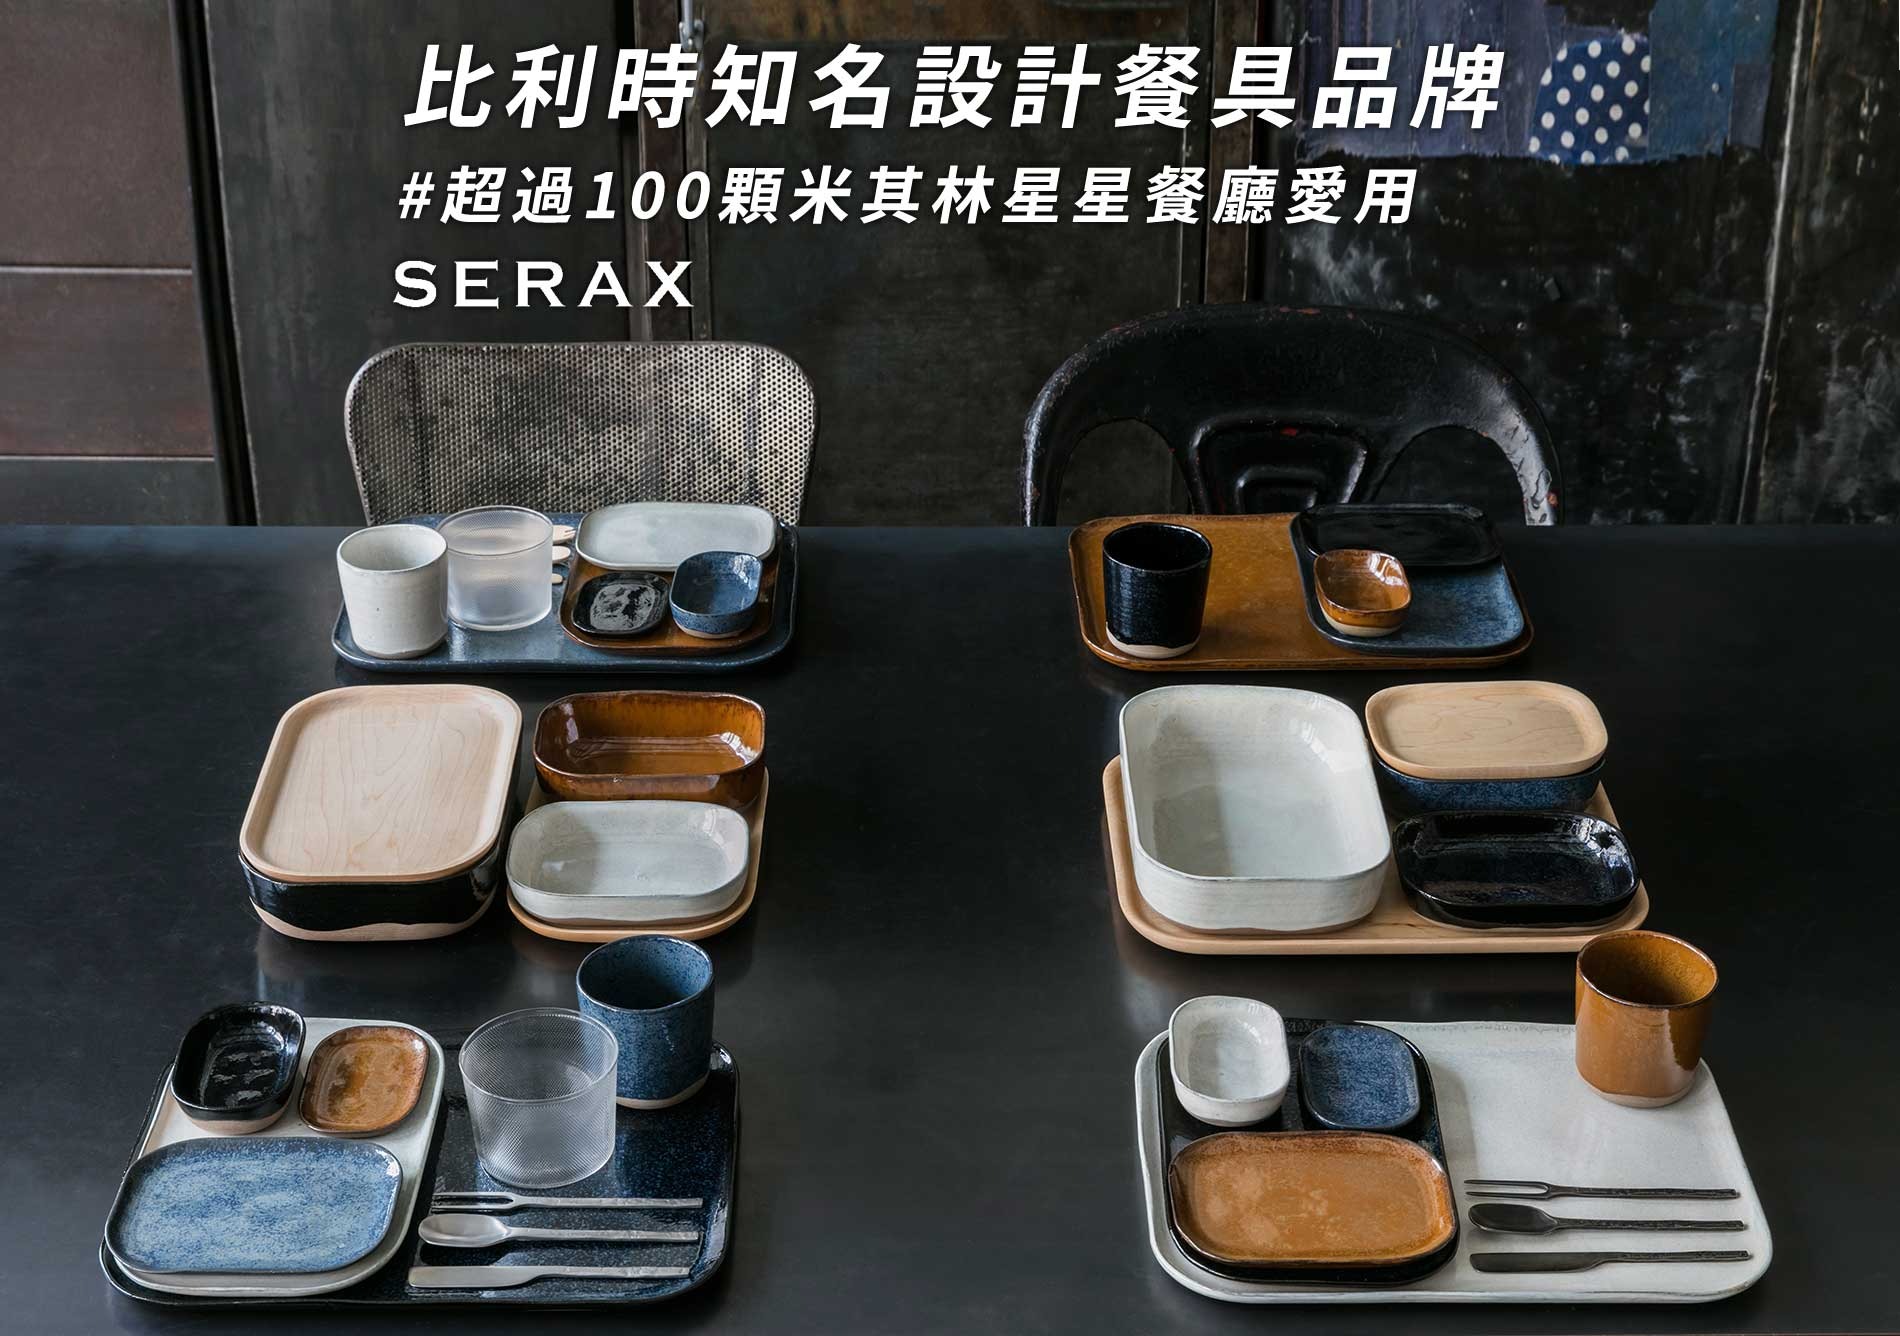  SERAX 比利時知名設計餐具品牌 超過100顆米其林星星餐廳愛用     